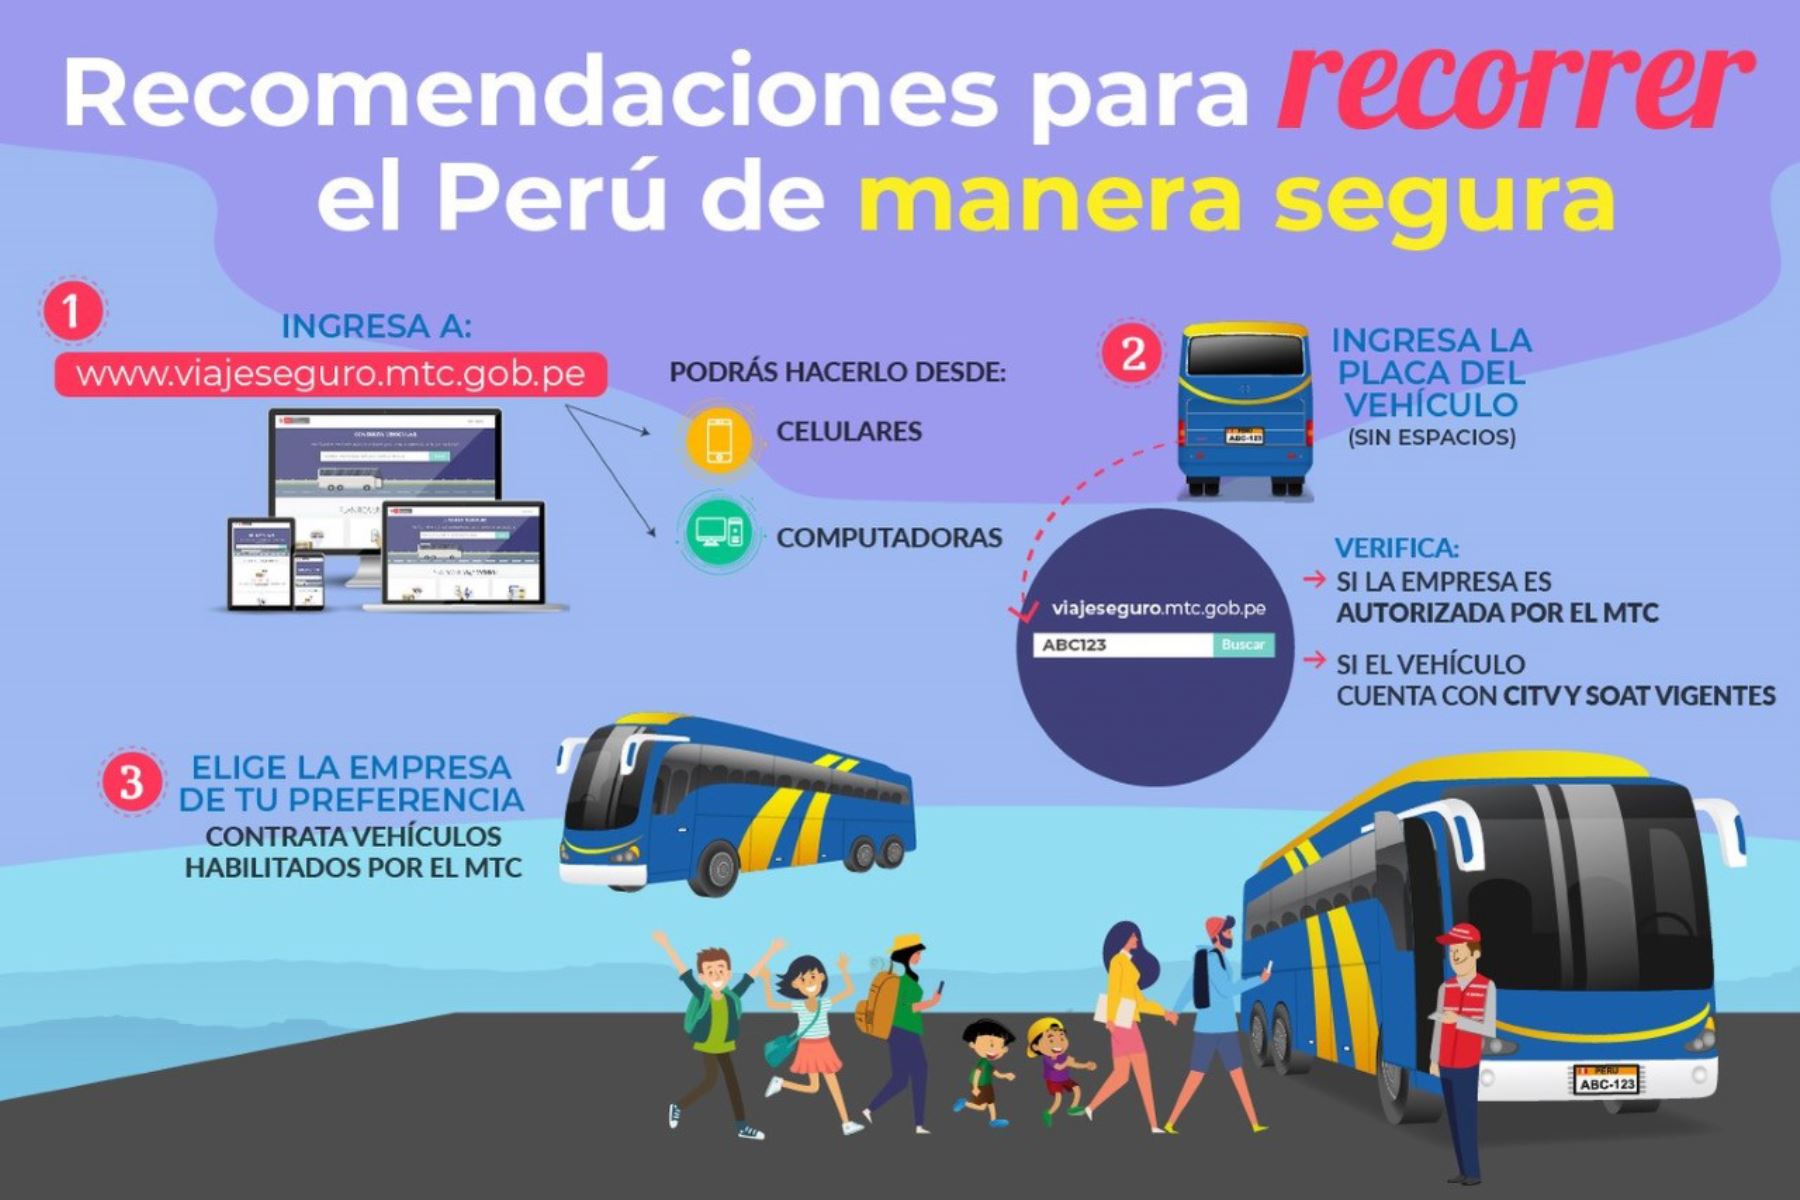 Recomendaciones del Ministerio de Transportes y Comunicaciones (MTC) para recorrer el Perú de manera segura por carretera